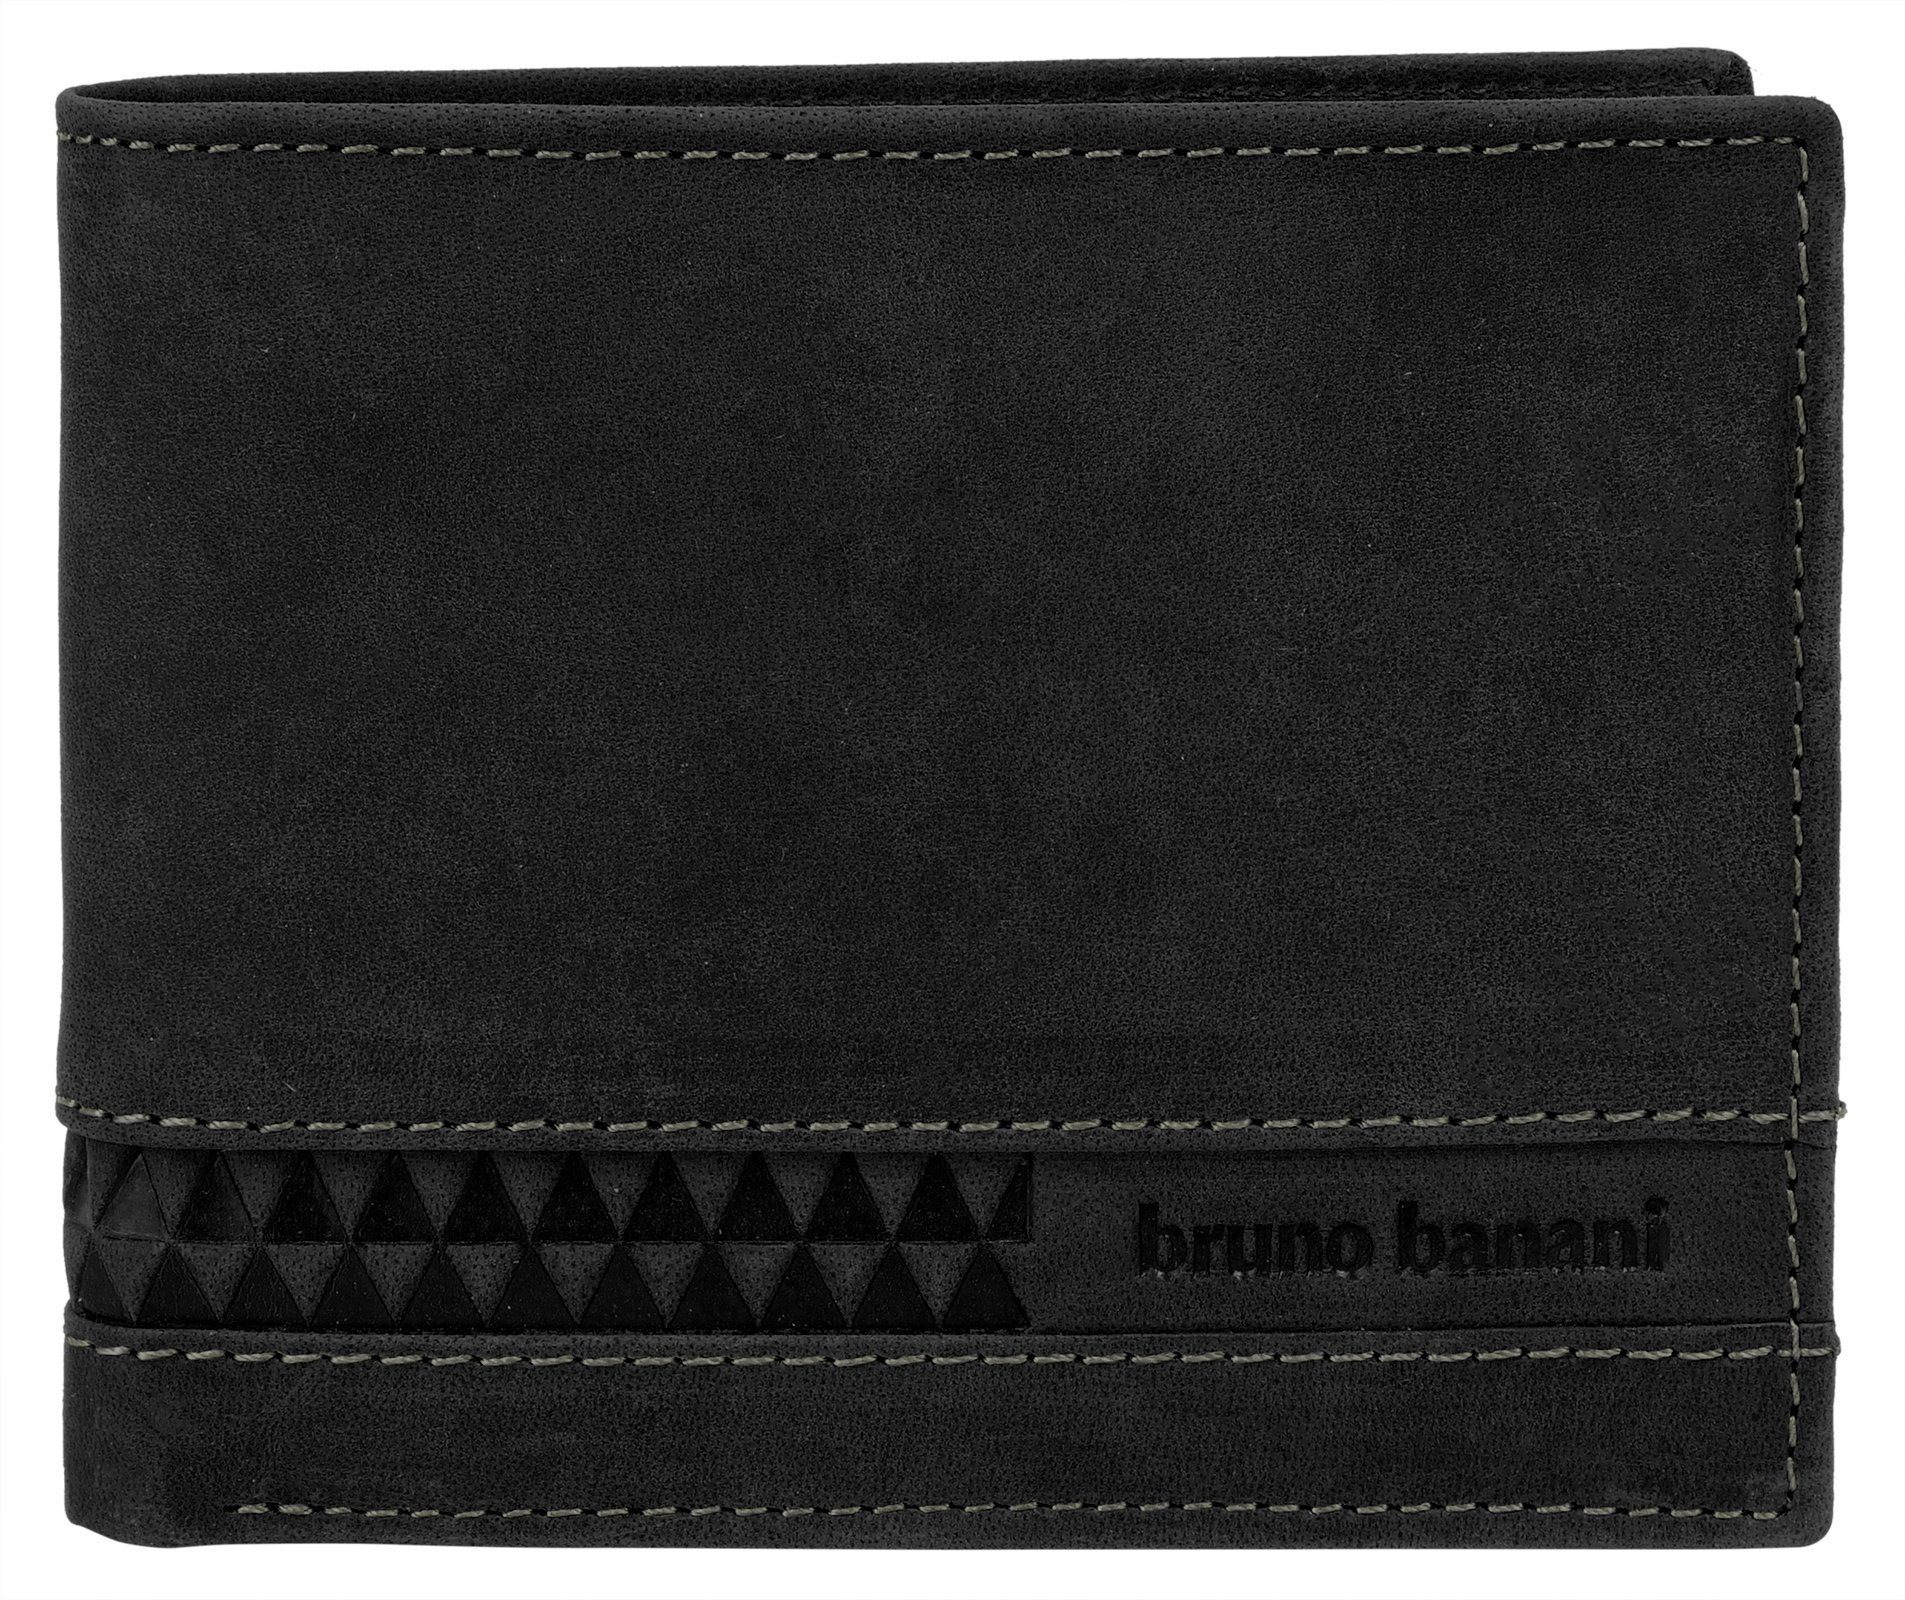 Bruno Banani schwarz Leder Geldbörse, echt